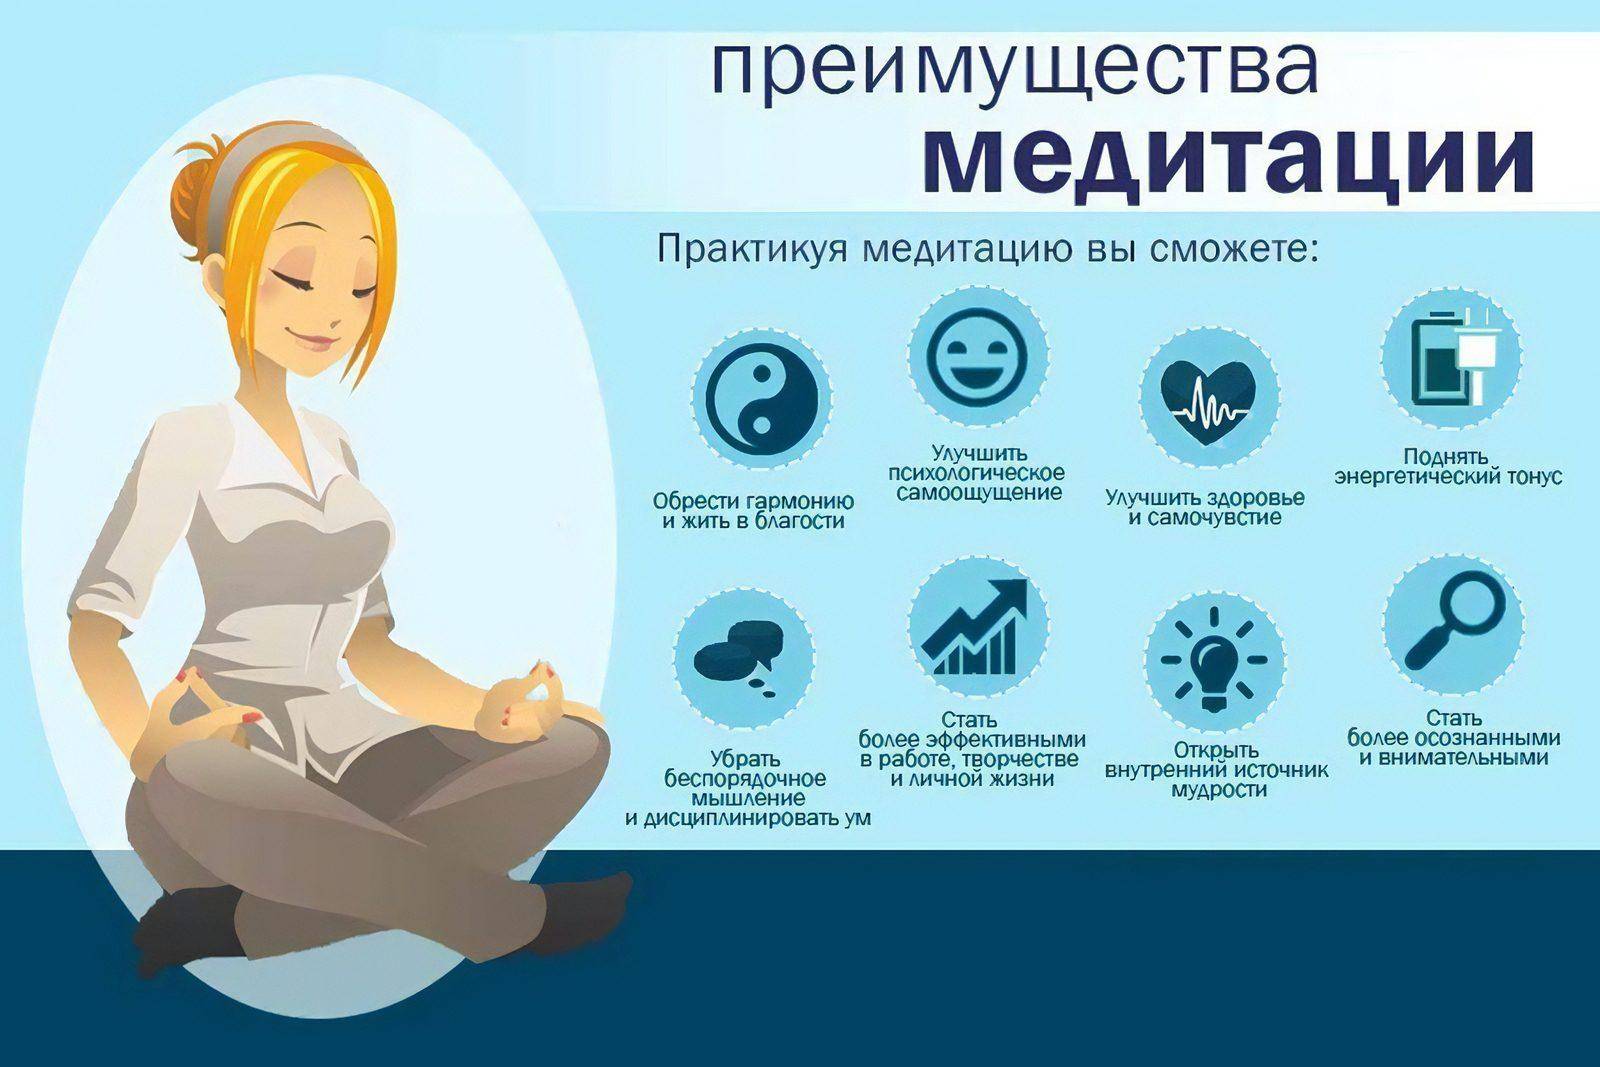 Зачем нужны советы. Польза медитации. Для чего нужна медитация. Как медитировать. Как правильно медитировать.